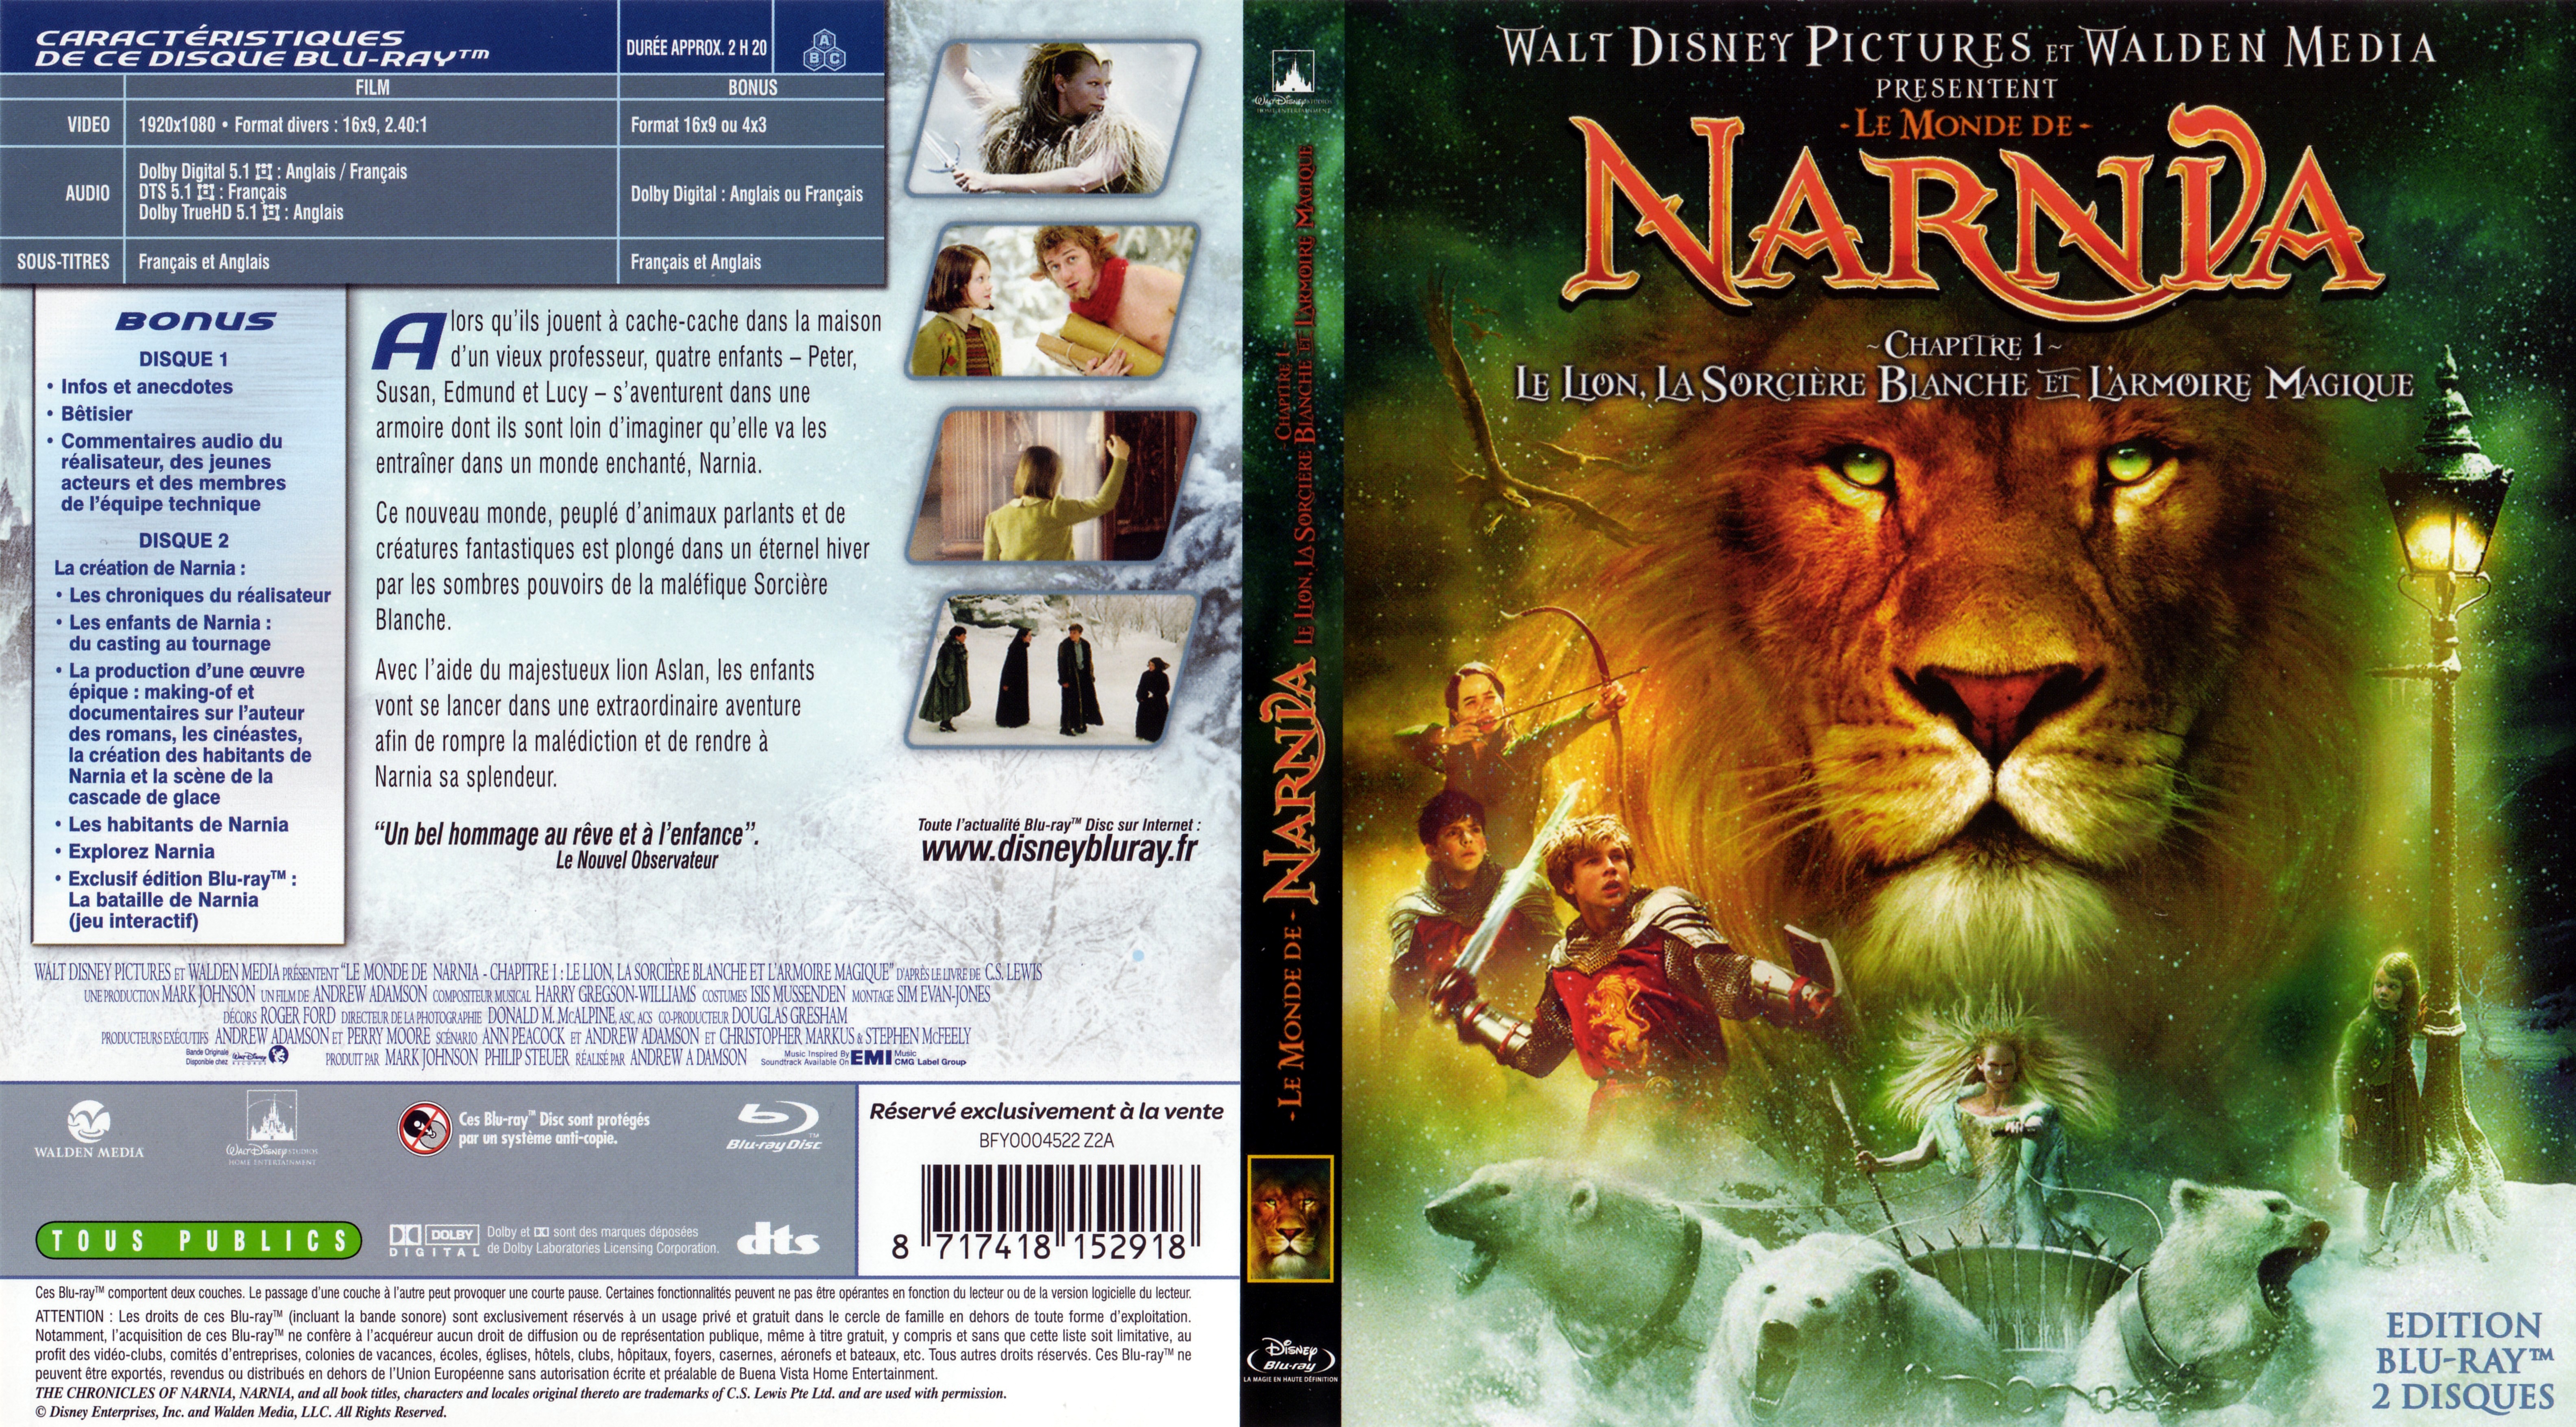 Jaquette DVD Le monde de narnia chapitre 1 (BLU-RAY)